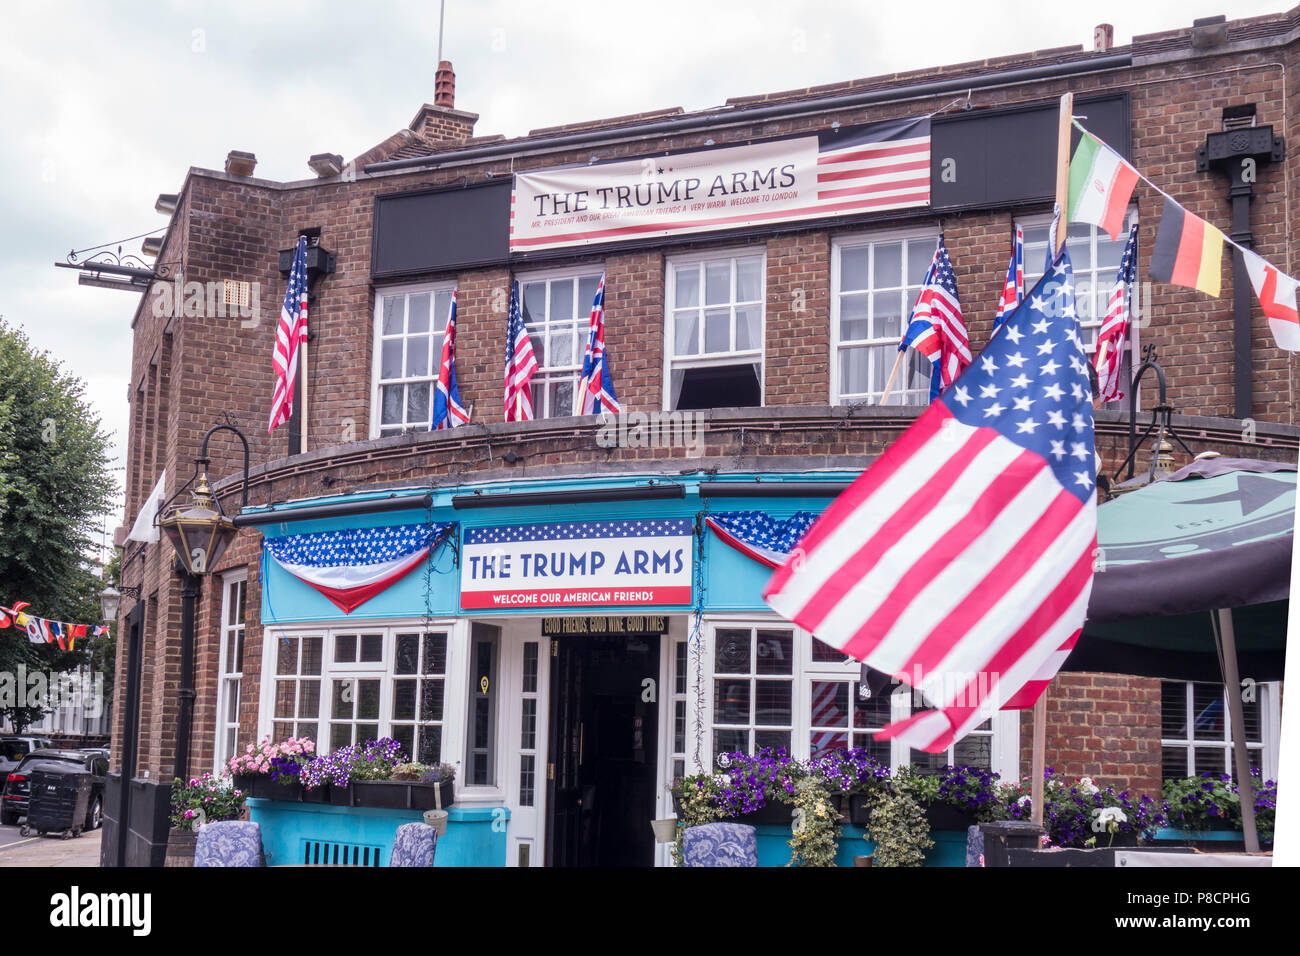 Londra, Regno Unito. 10 Luglio 2018: Il Pub Jamesons a West Kensington cambia la sua denominazione in "l'armi vincenti' per sostenere la visita del presidente degli Stati Uniti. Credito: William Barton. Credito: William Barton/Alamy Live News Foto Stock